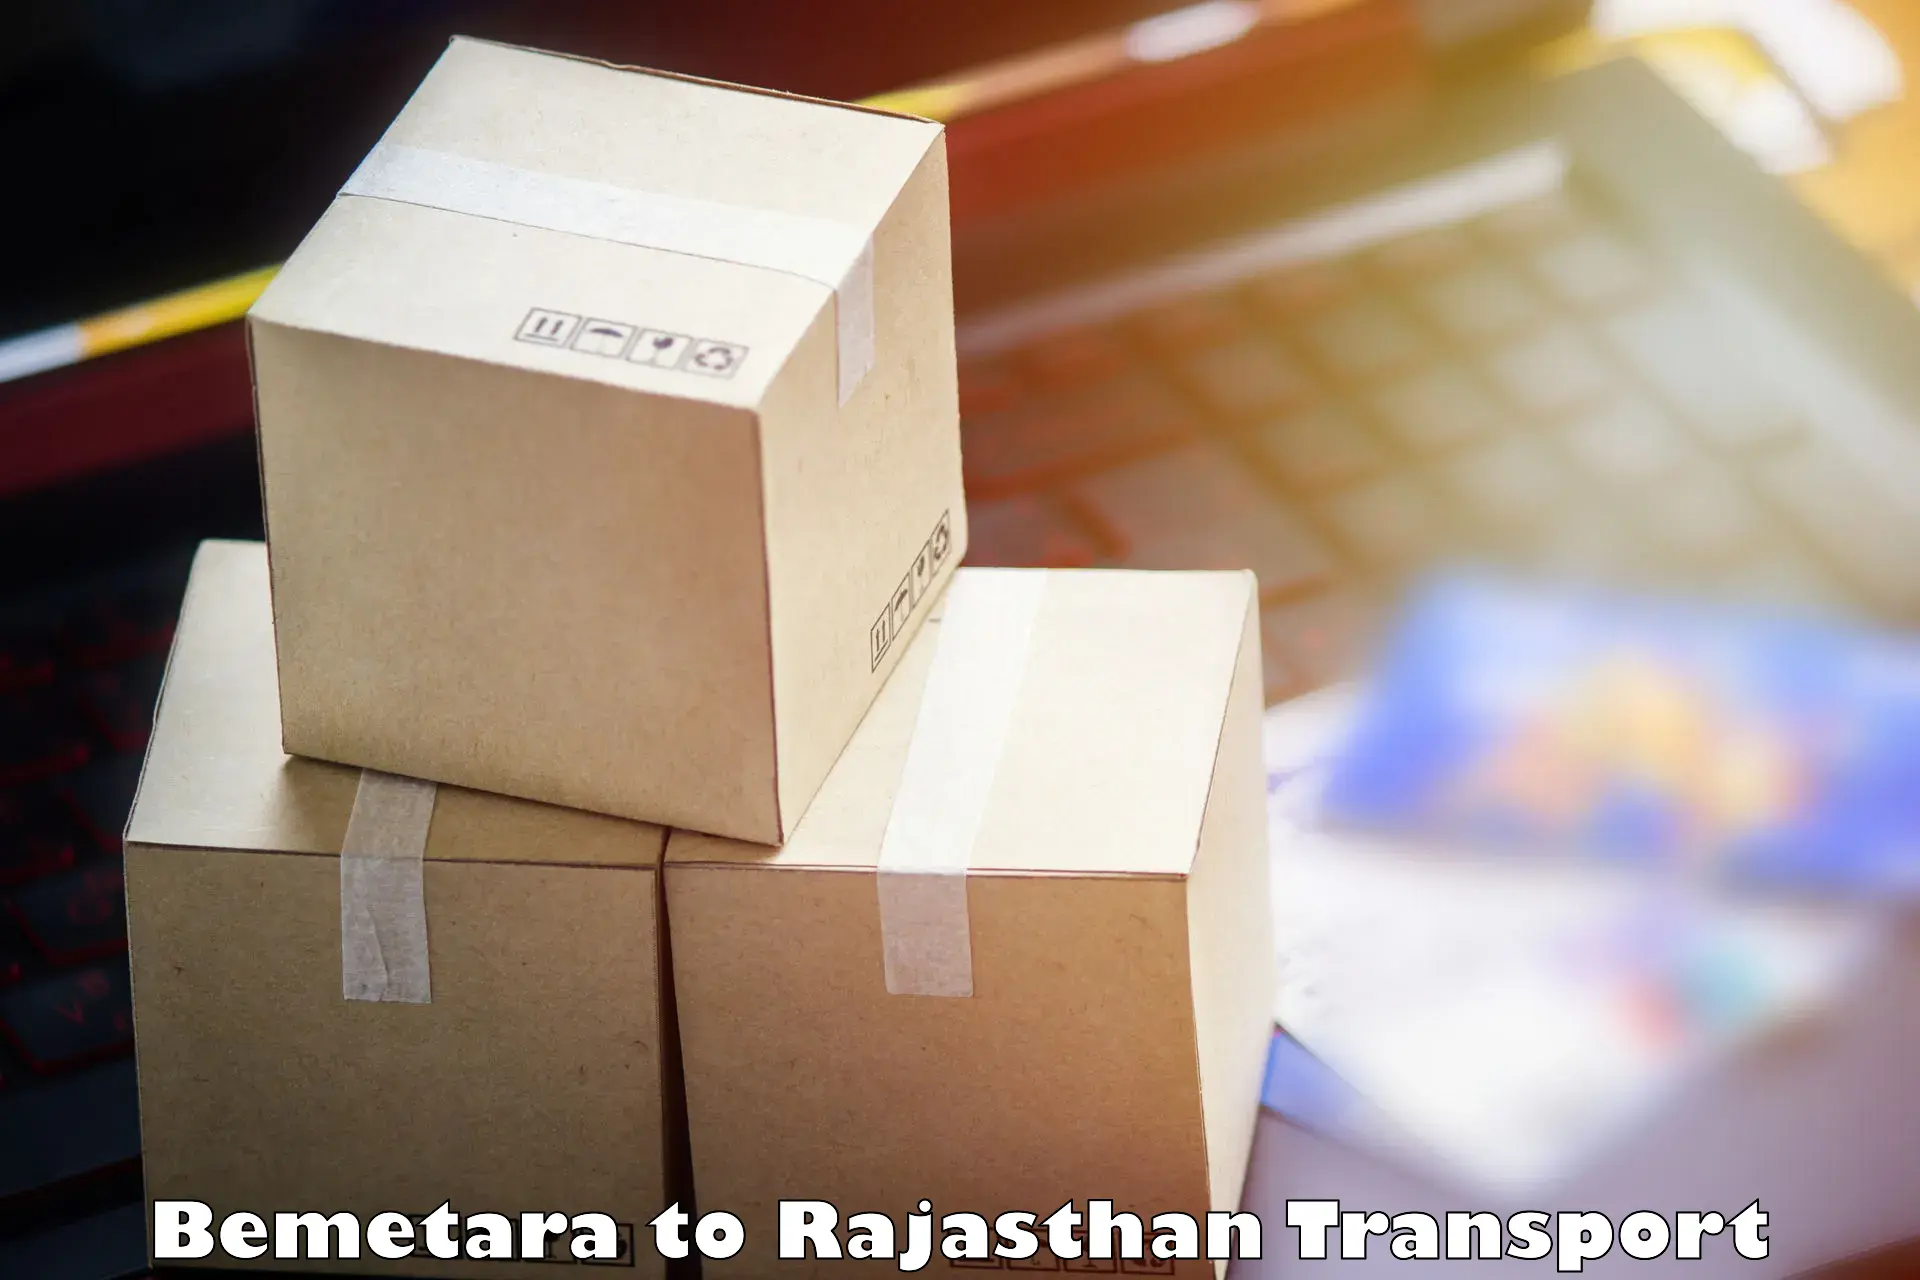 Daily transport service Bemetara to Rajasthan